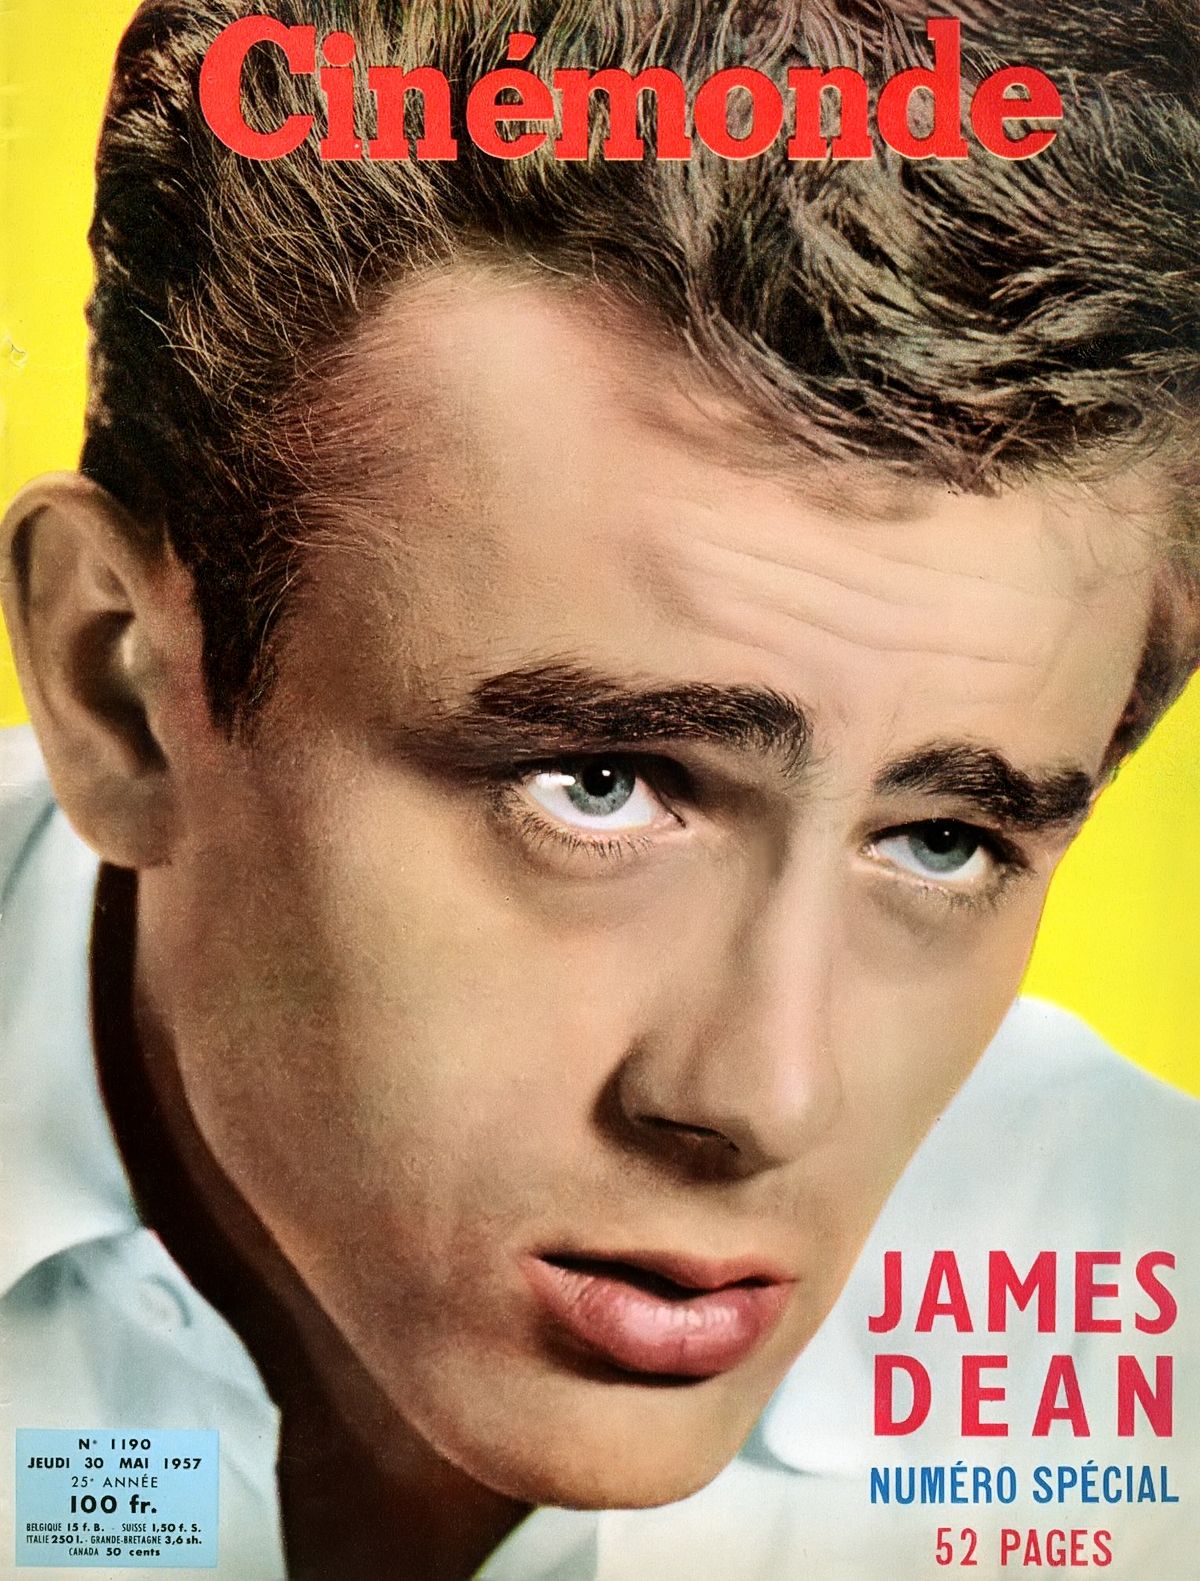 Джеймс Дин на обложке журнала Cinemonde